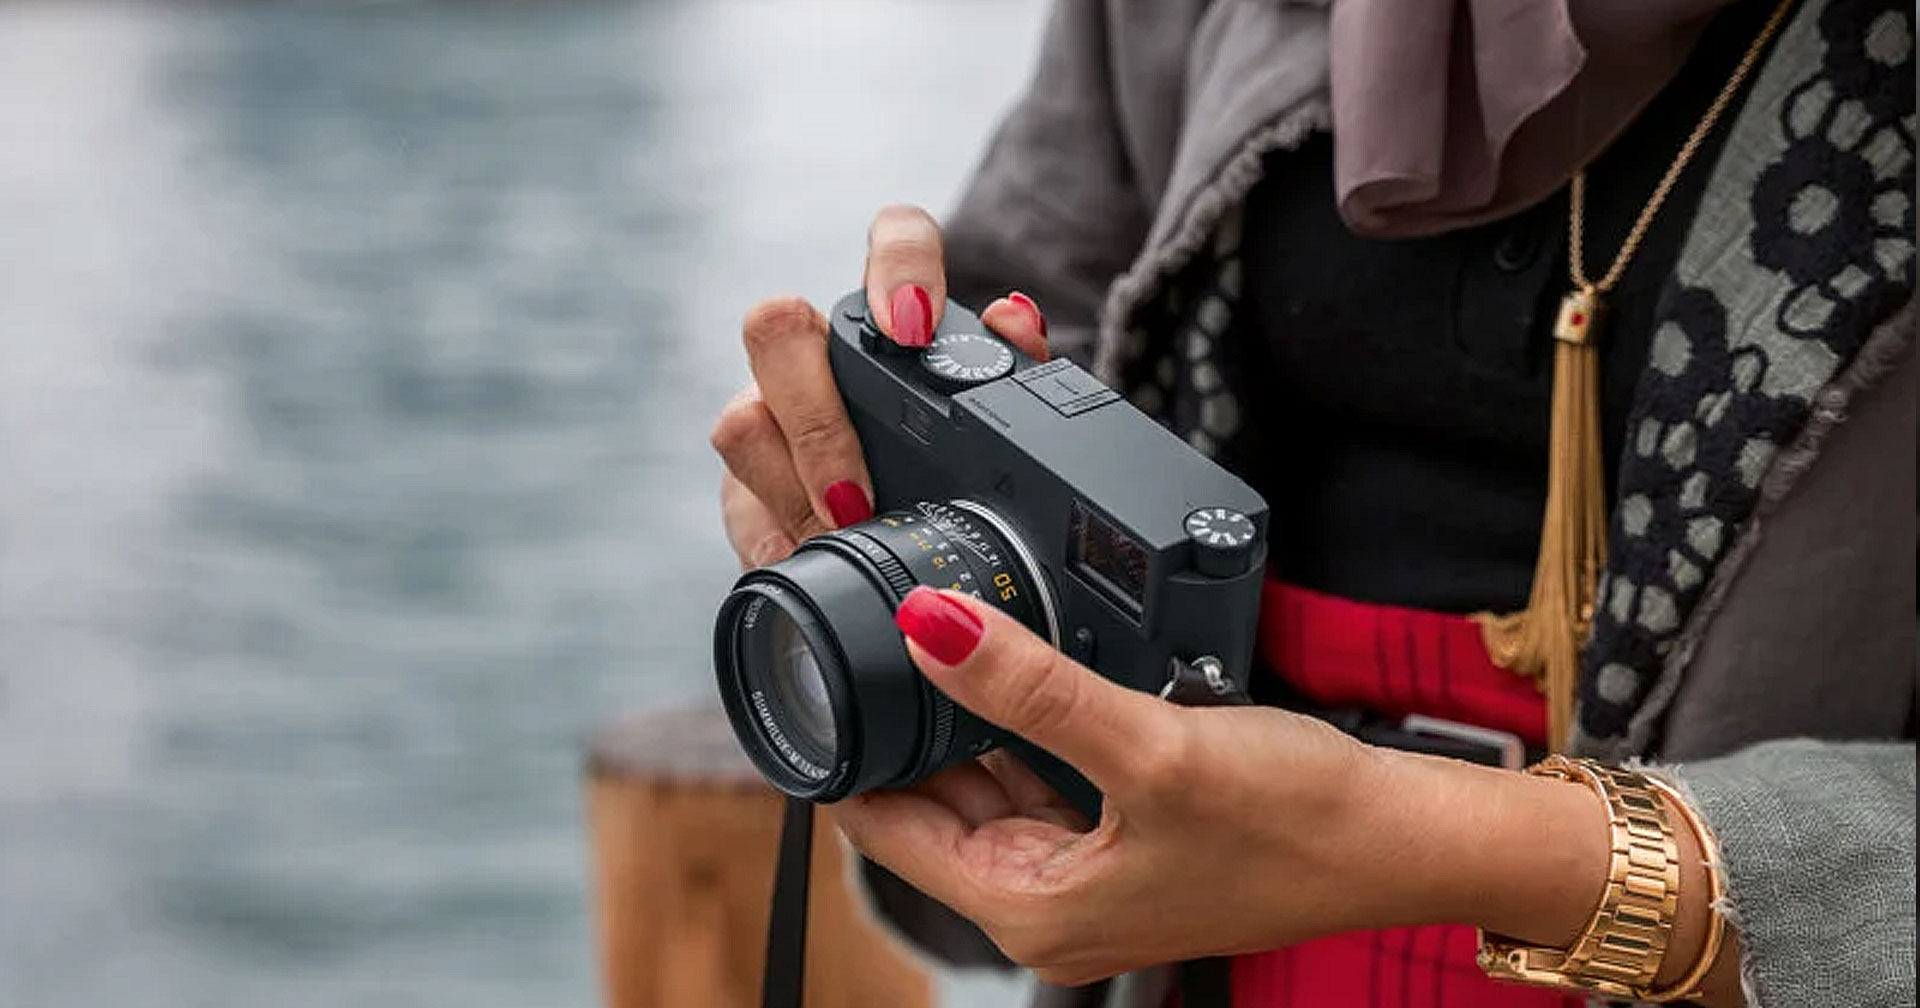 เปิดตัว Leica M11 Monochrom กล้อง Digital Rangefinder หรู เซนเซอร์ 60MP ที่ถ่ายได้เฉพาะภาพขาวดำ!